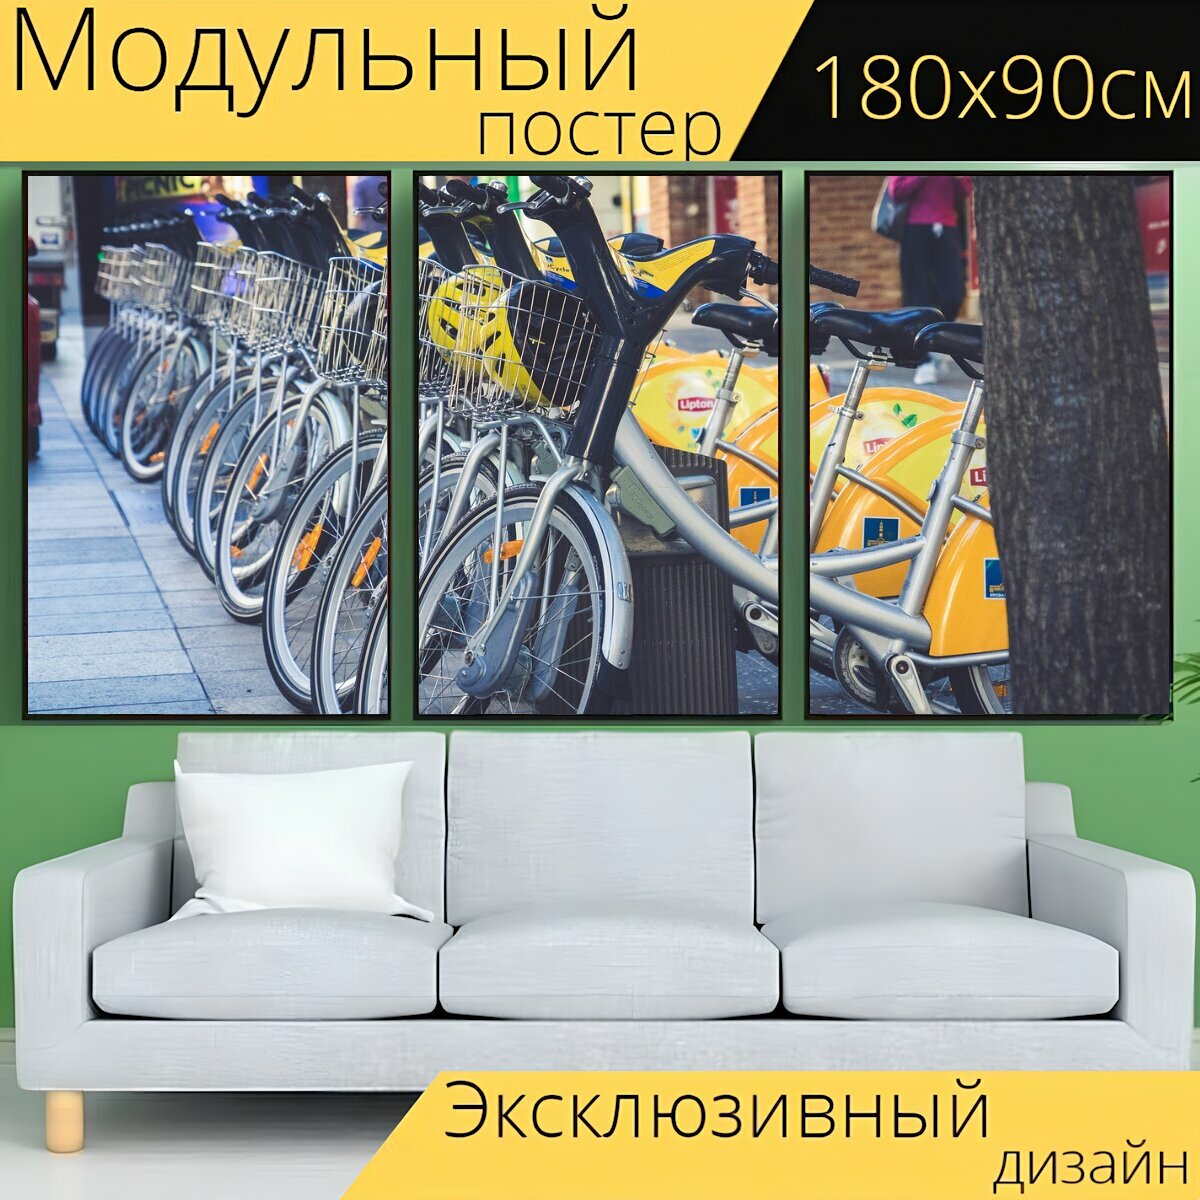 Модульный постер "Прокат велосипедов, улица, город" 180 x 90 см. для интерьера